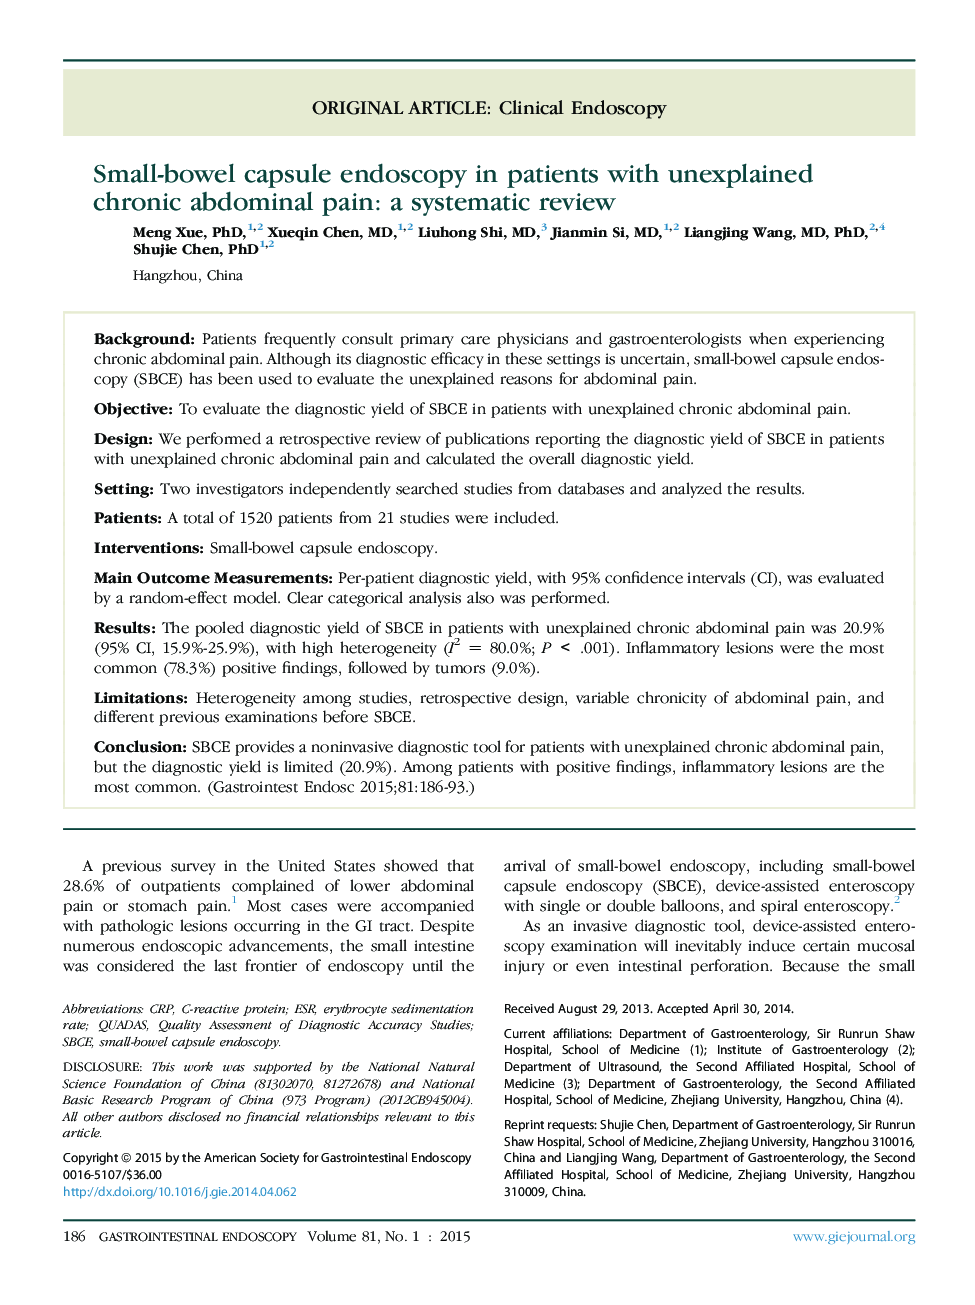 آندوسکوپی کپسول کوچک روده در بیماران مبتلا به درد ناگهانی درد شکمی: یک بررسی سیستماتیک 